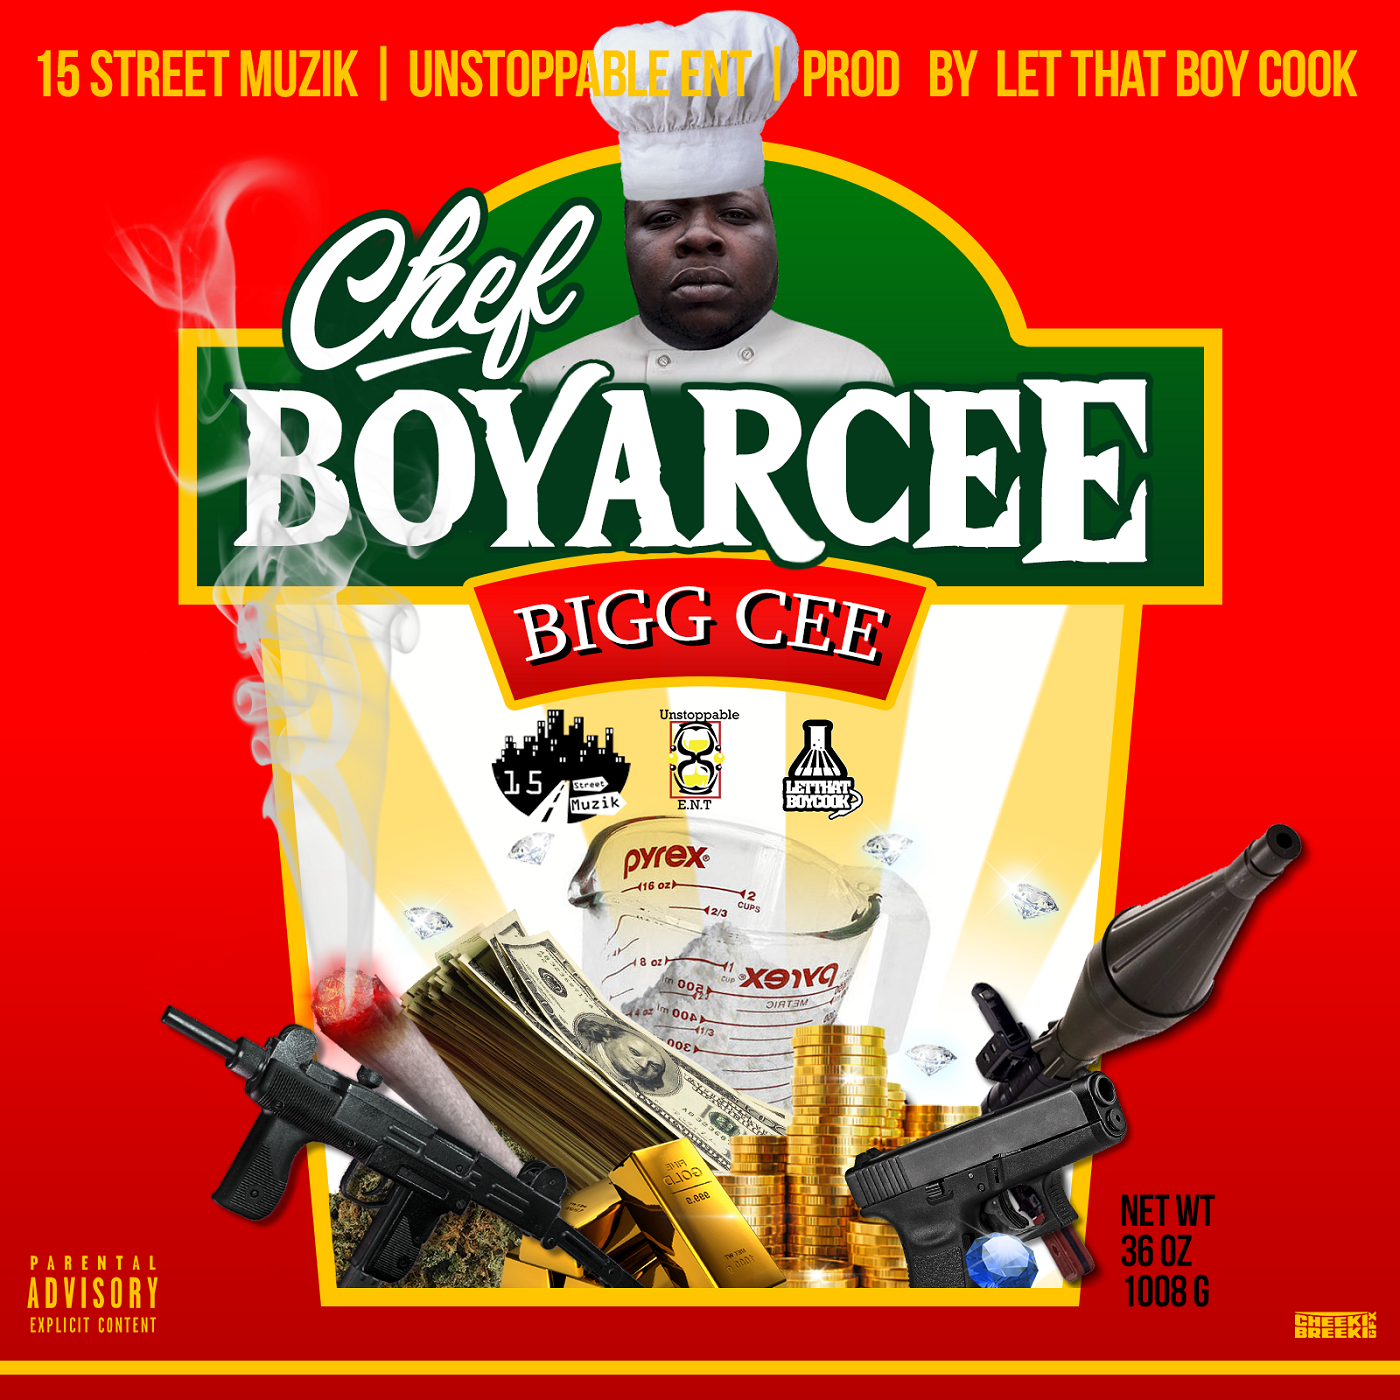 [Album] Bigg Cee – Chefboyarcee @biggcee15